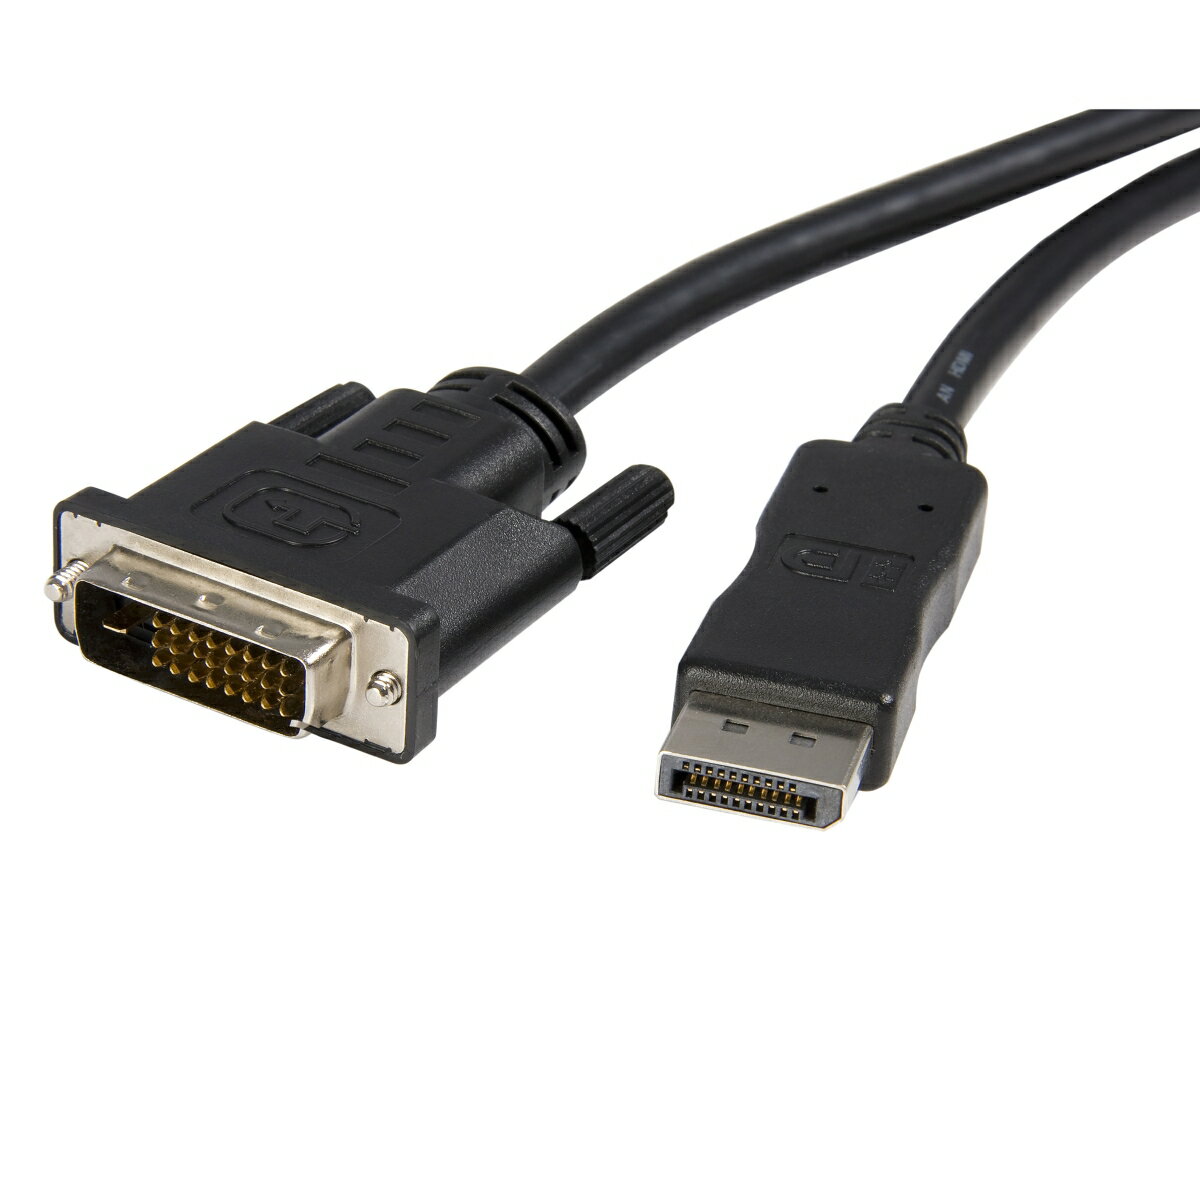 DisplayPortビデオカード／ソースにDVIディスプレイまたはプロジェクターをケーブル一本で接続できるDisplayPort - DVI変換ケーブル。3m の接続距離をカバーする本ケーブルは、オスDVIコネクタとオスDisplayPortコネクタを一本づつ備えています。

このDisplayPort／DVI変換ケーブルは、高データ転送を必要とするビデオ送信に対応しており、モニタ最大解像度1920x1200およびHDTV解像度1080pをサポートします。DVIディスプレイを活かしながら、最先端のDisplayPortビデオソースを使用することができます。

本製品は、DP++（DisplayPort++）ポートを必要とするパッシブアダプタであるため、DVIやHDMI信号もポートを介してパススルーすることができます。 

StarTech.comでは3年間保証と無期限無料技術サポートを提供しています。